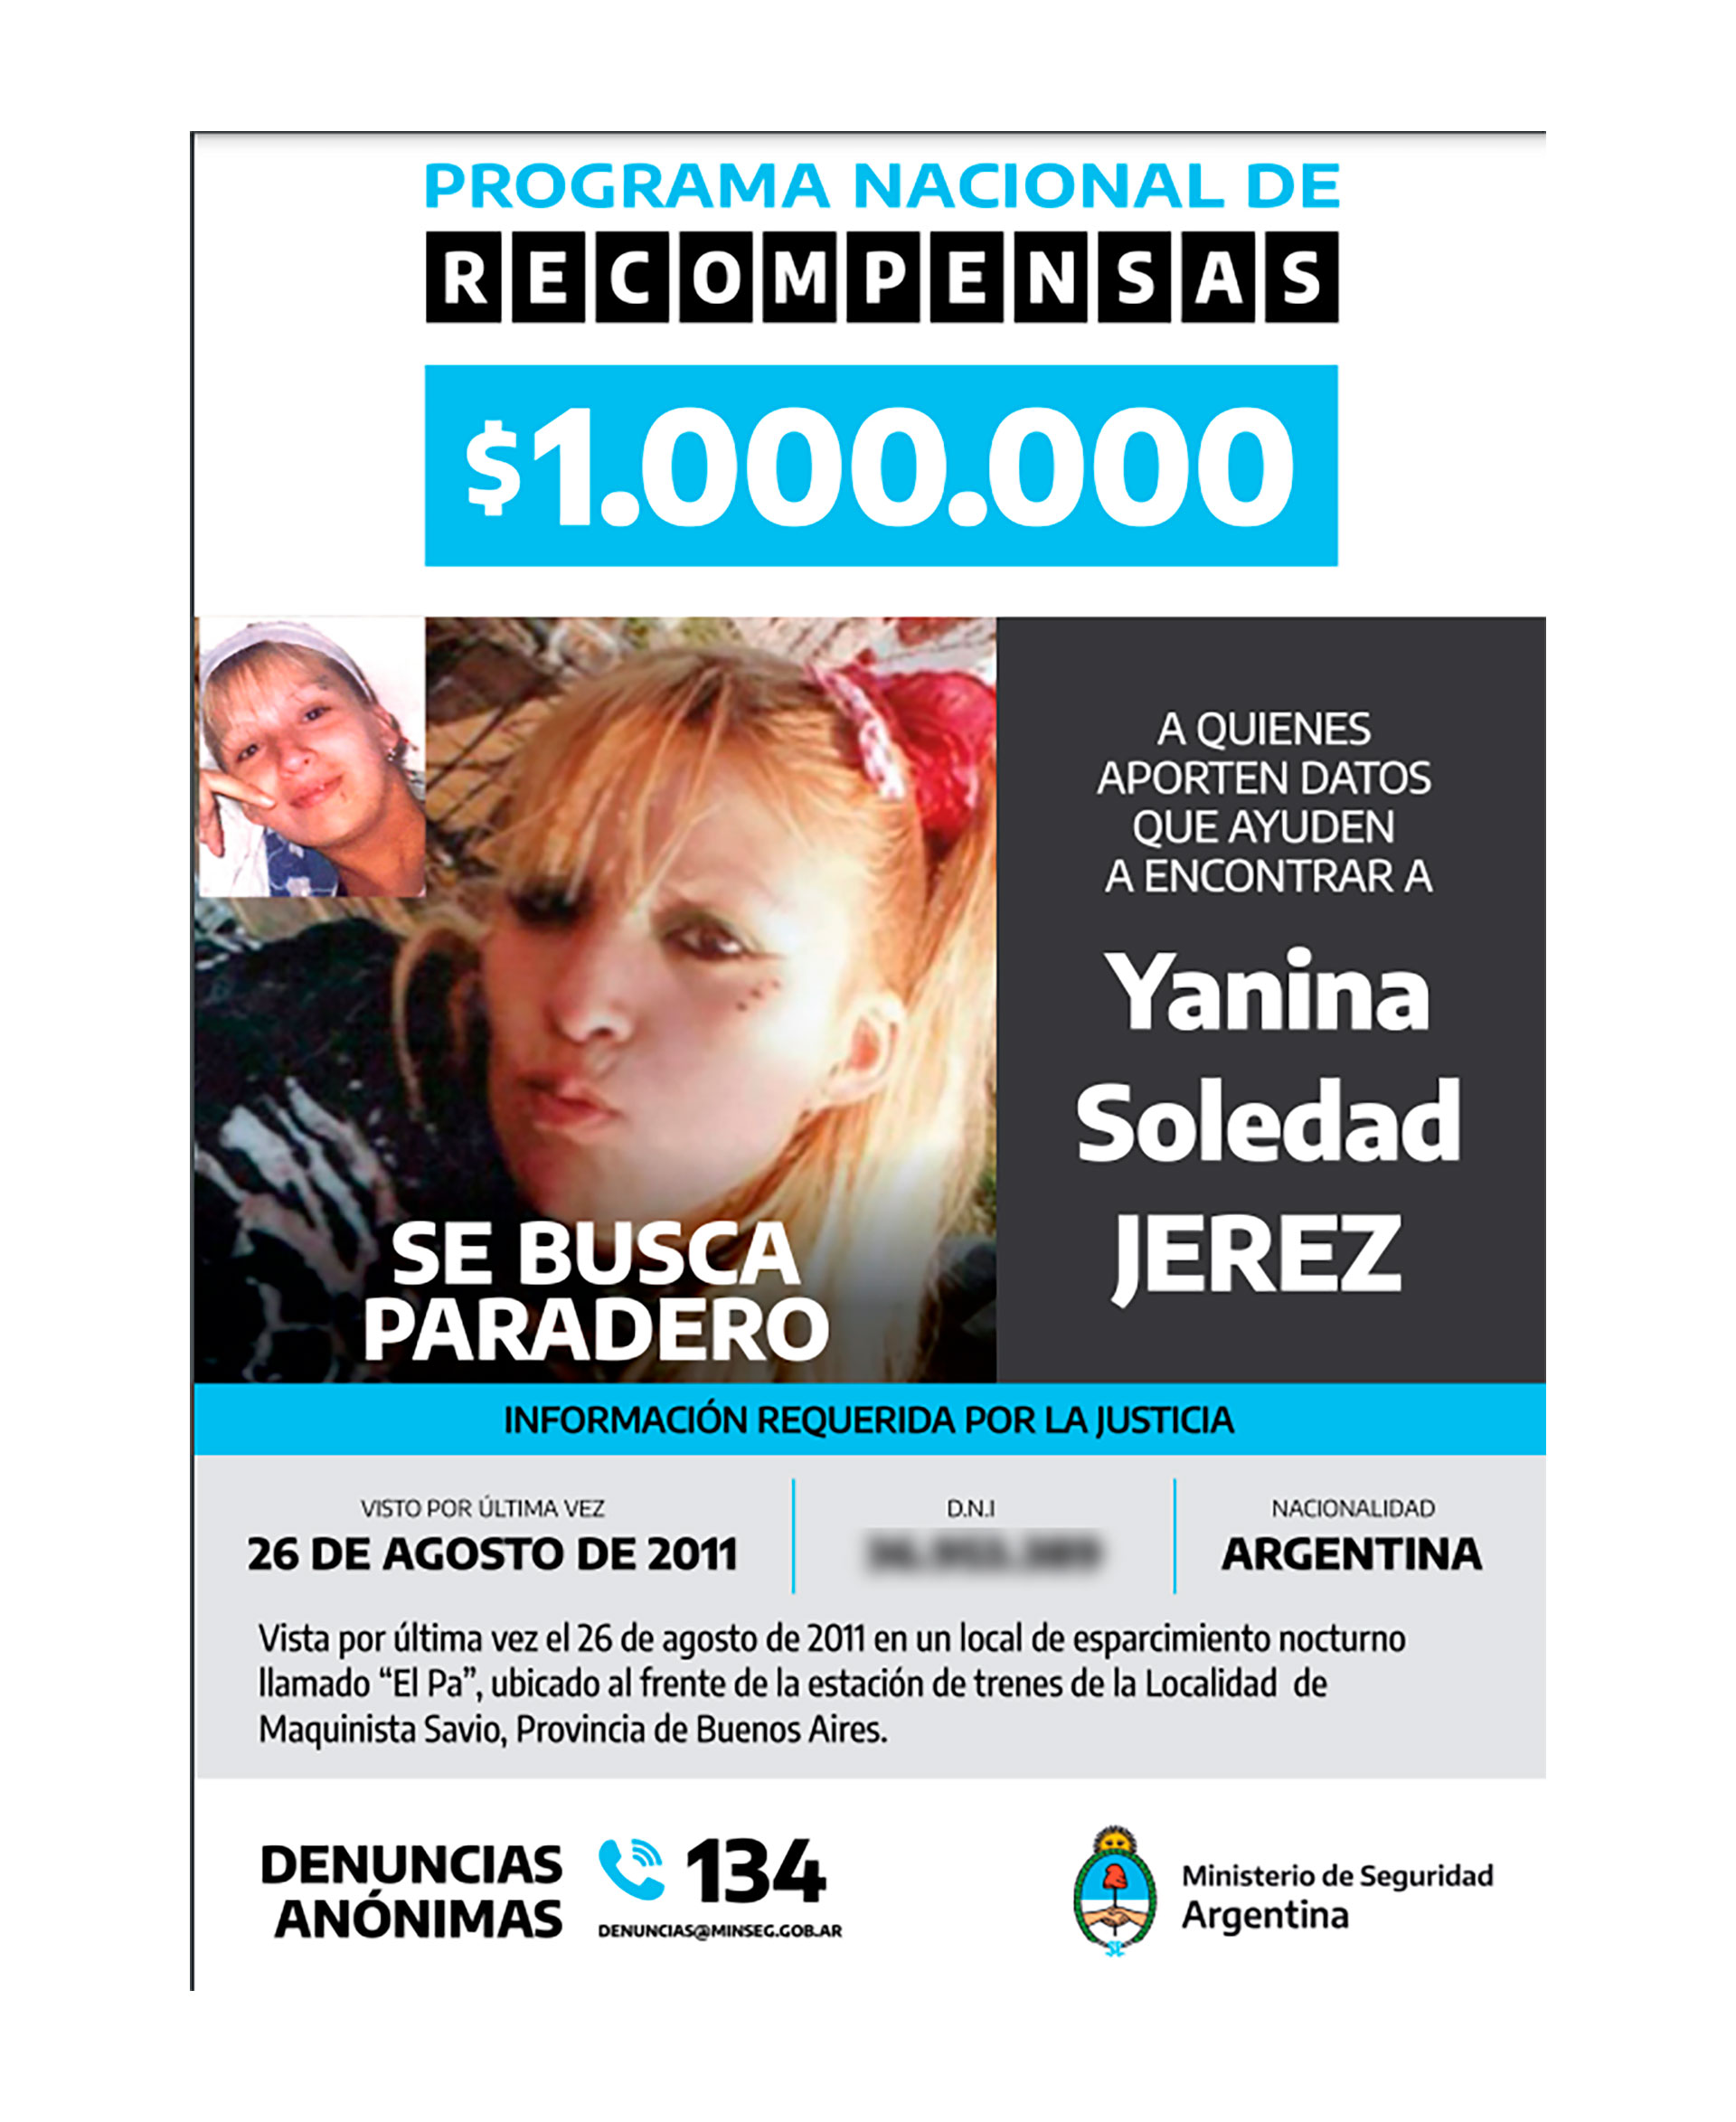 Por quien aportara información de Yanina Soledad Jerez, el Ministerio de Seguridad nacional emitió un pedido de recompensa de $1.000.000